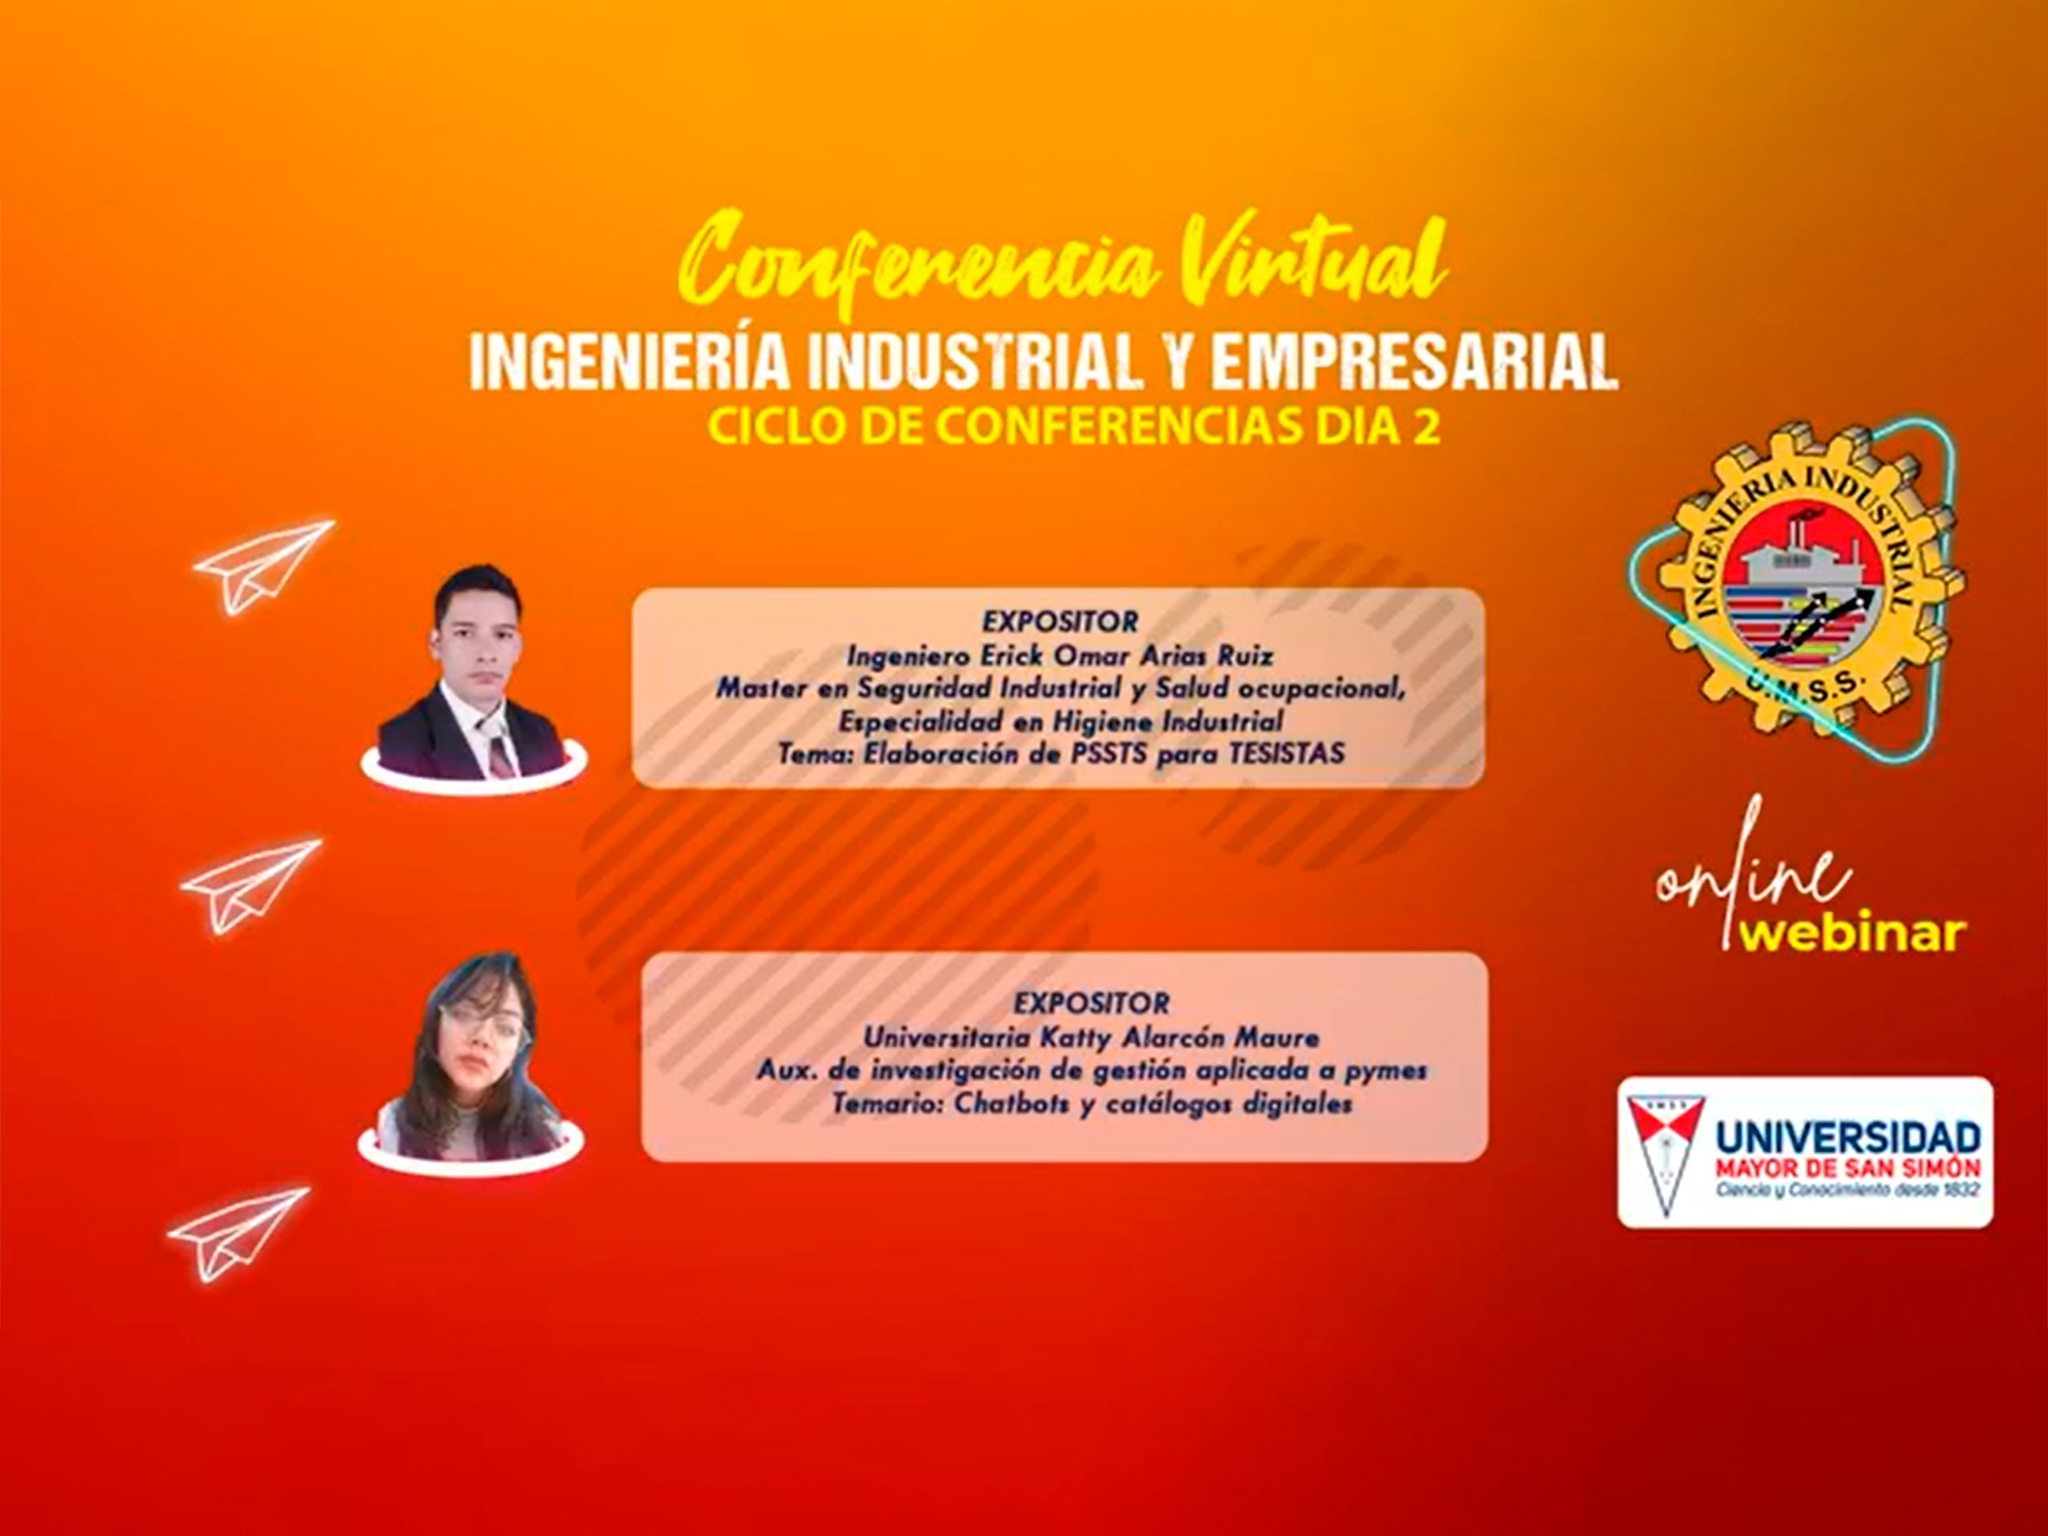 Ciclo de Conferencias Virtuales - Ingeniería Industrial y Empresarial Día 2